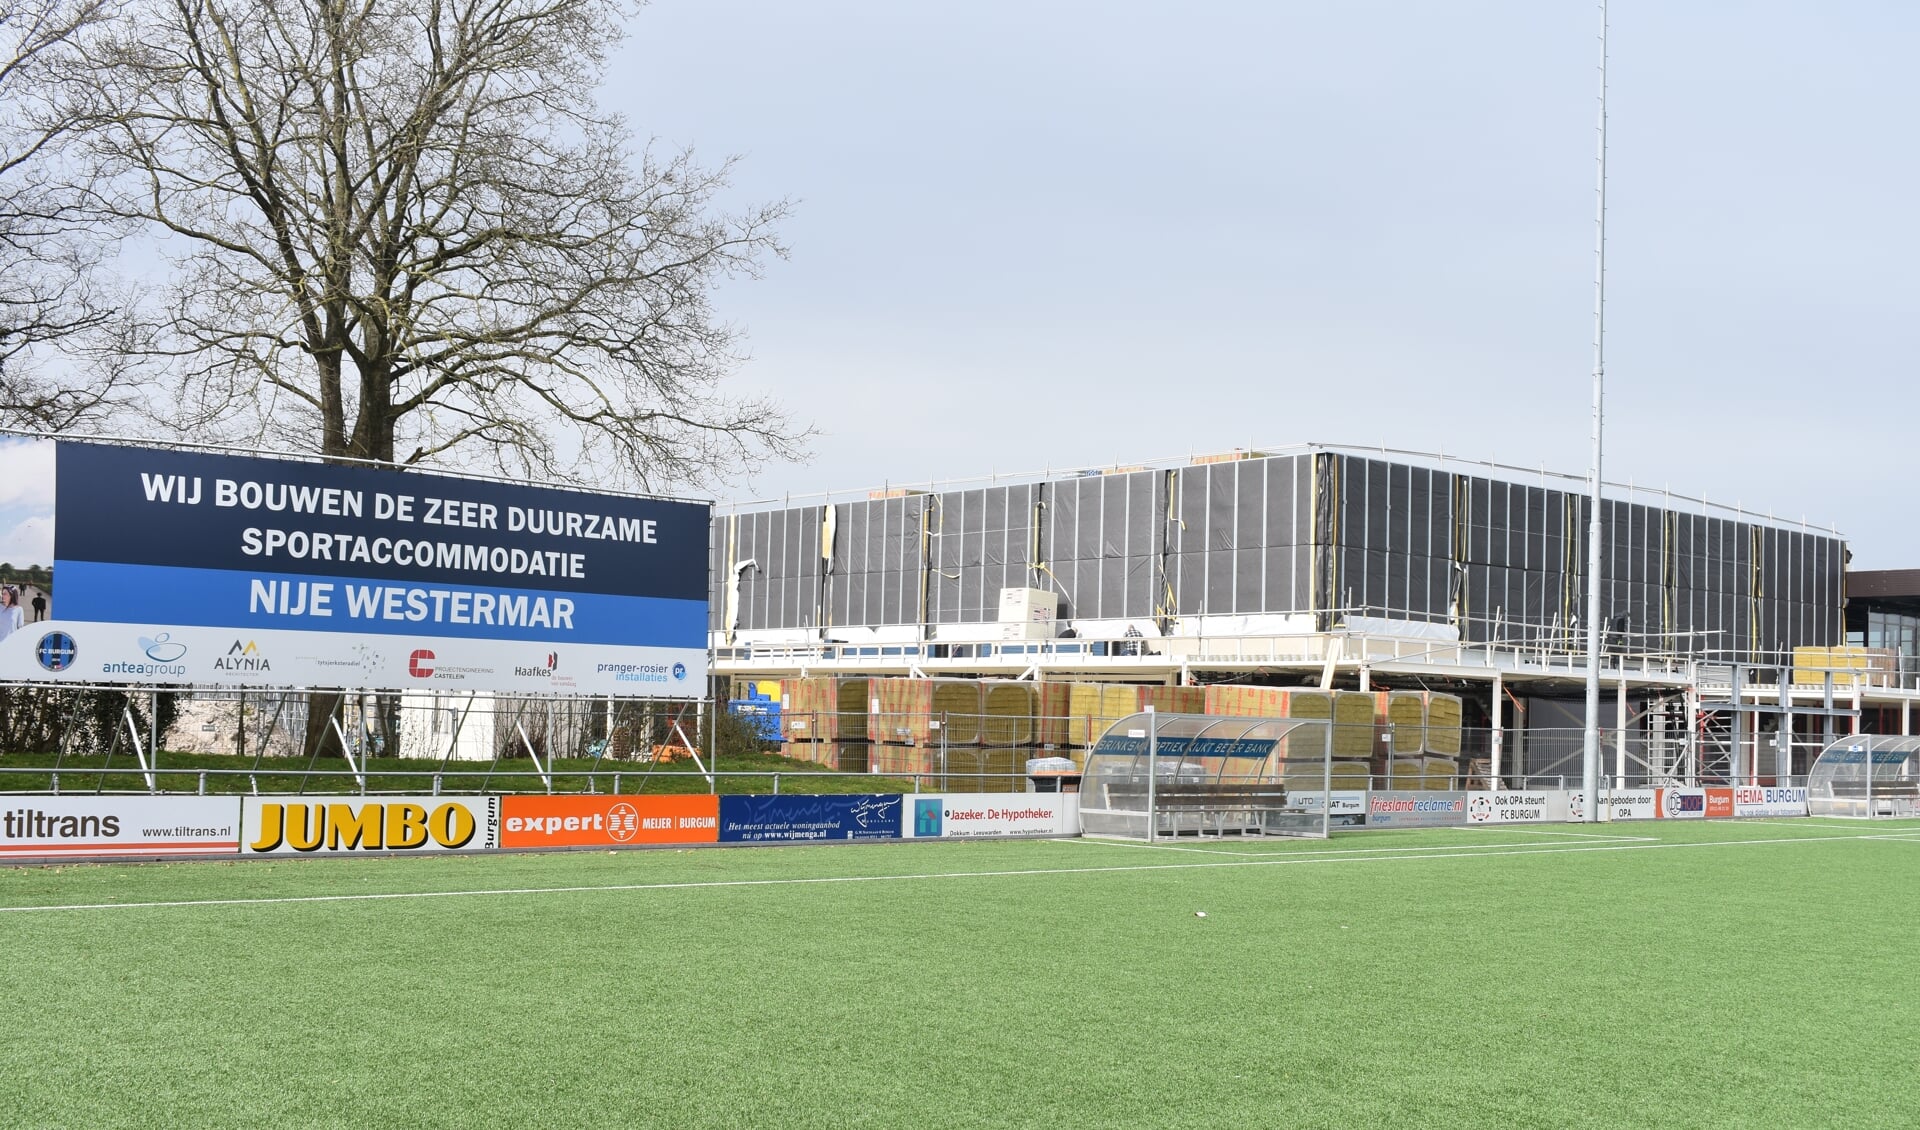 'Wij bouwen aan een zeer duurzame sportaccomodatie Nije Westermar', meldt het bouwbord. Die inzet is met een landelijke nominatie gewaardeerd.